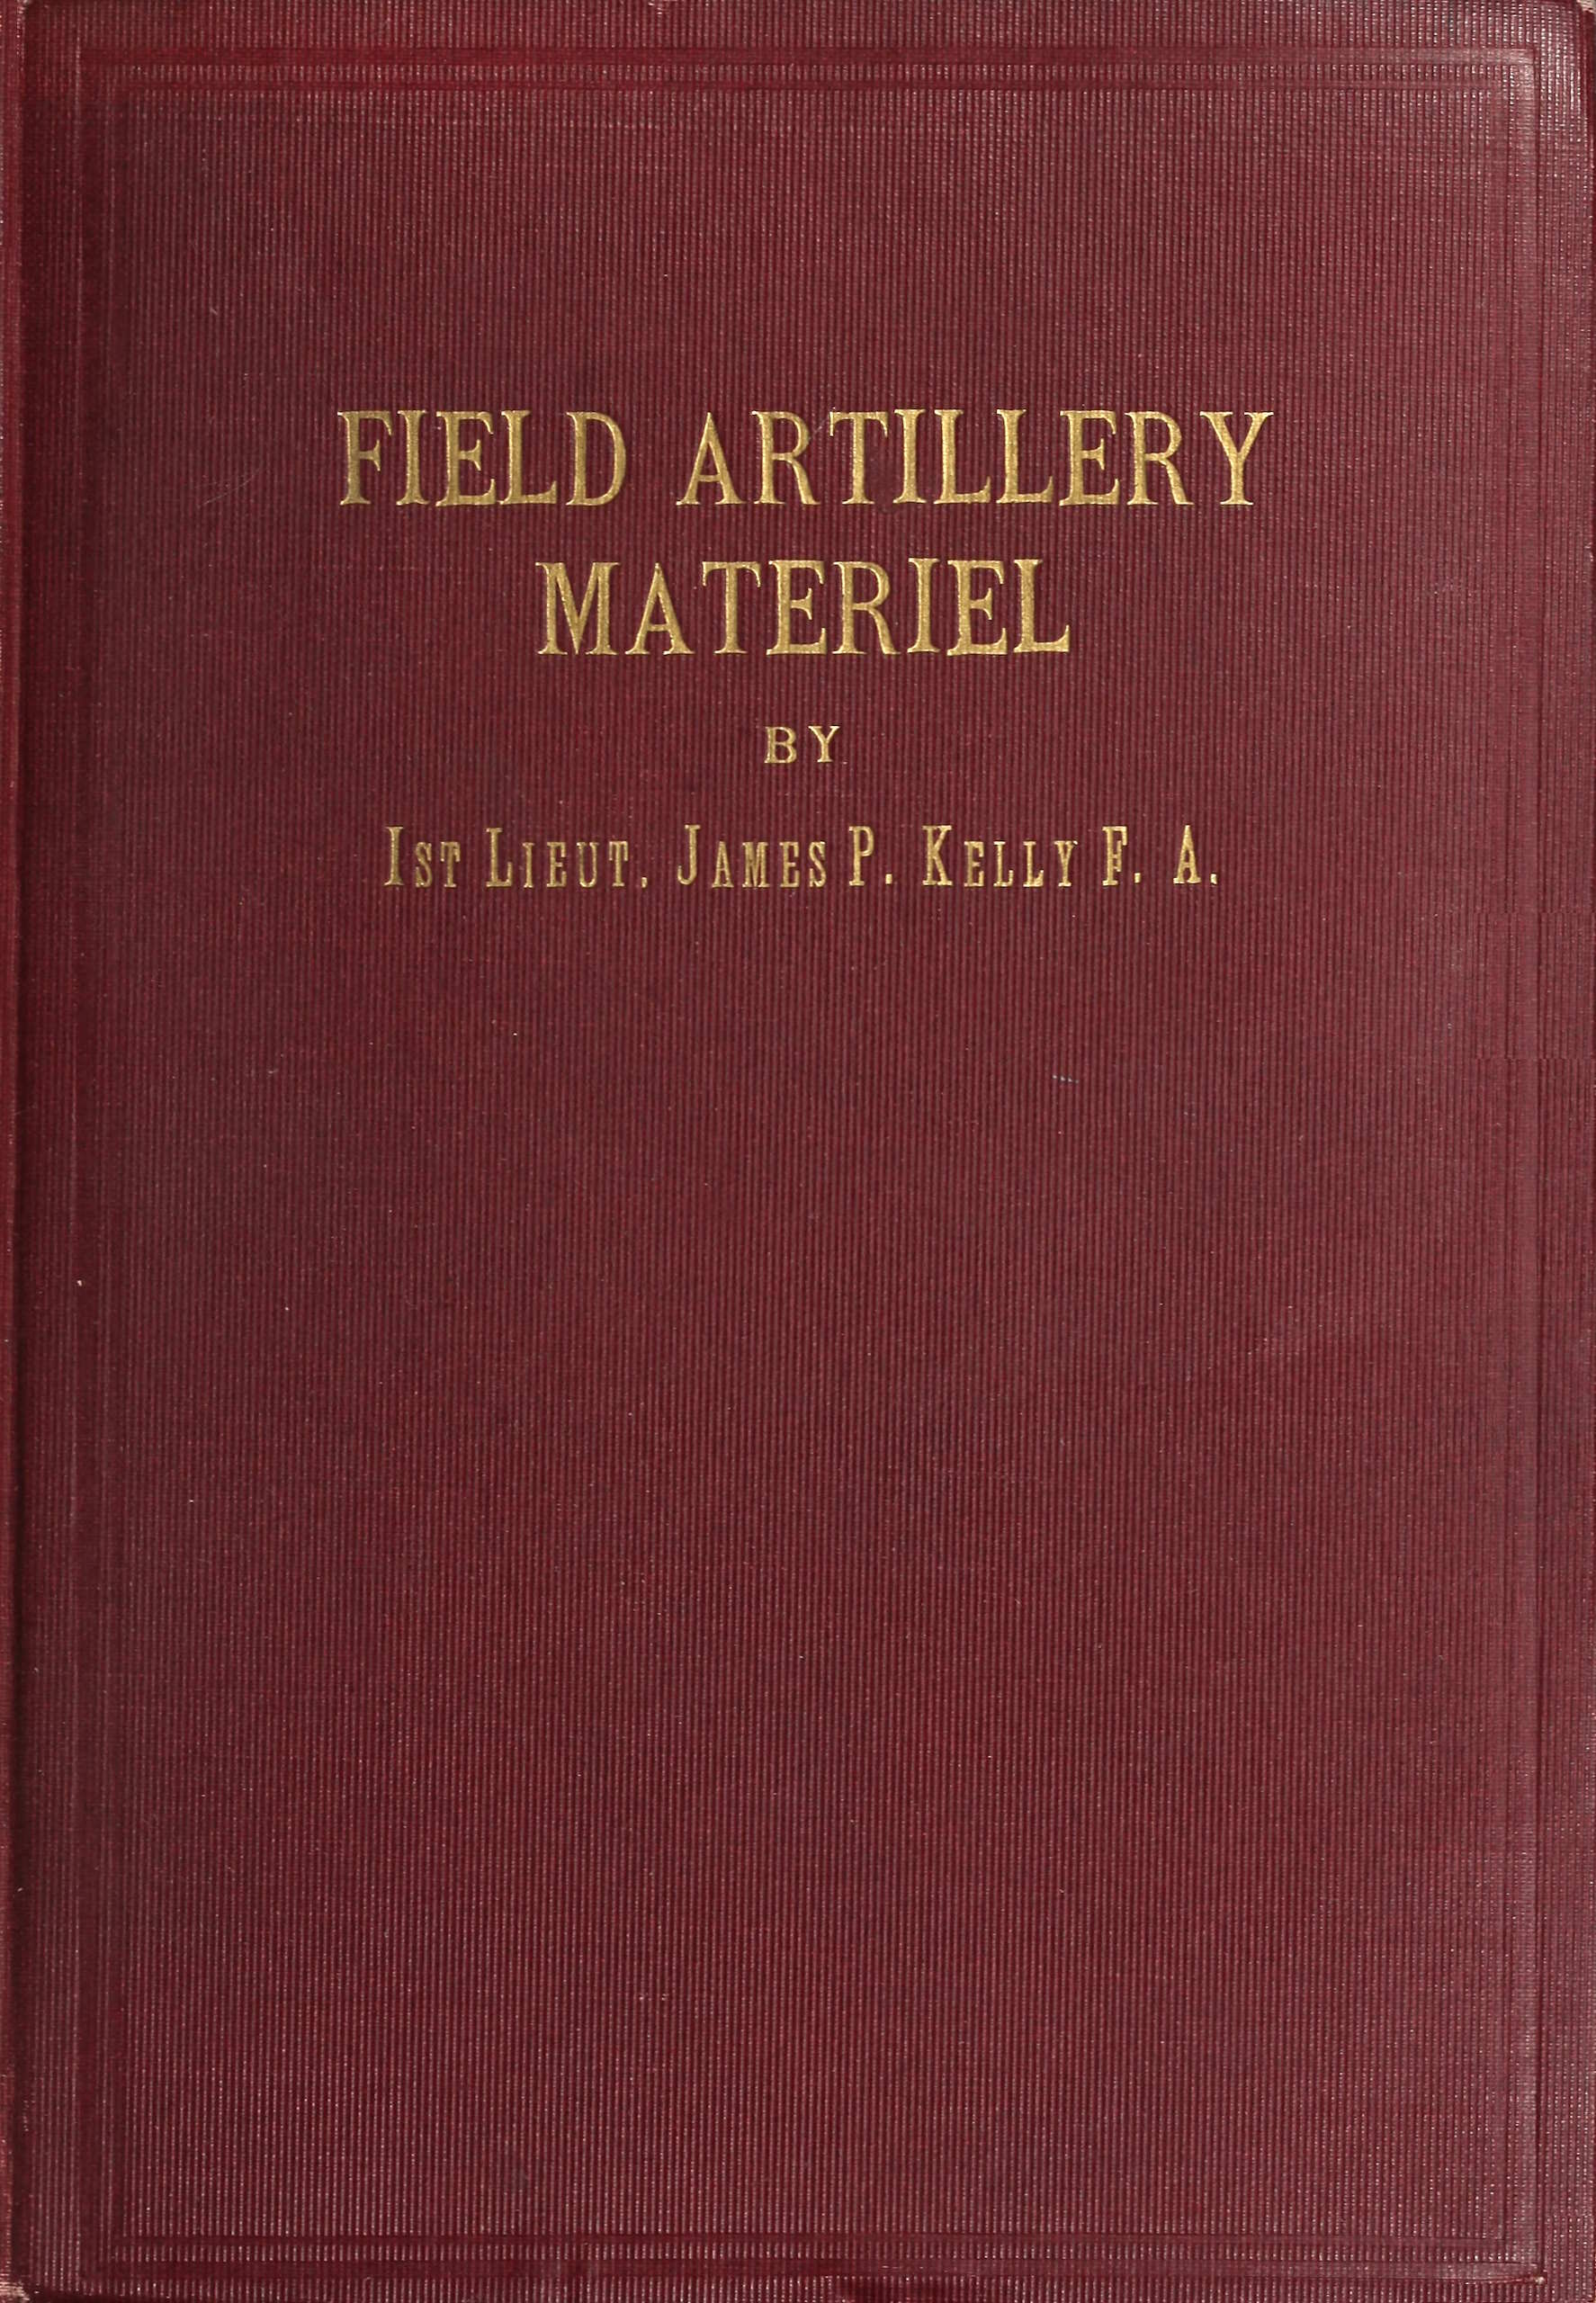 Field artillery materiel